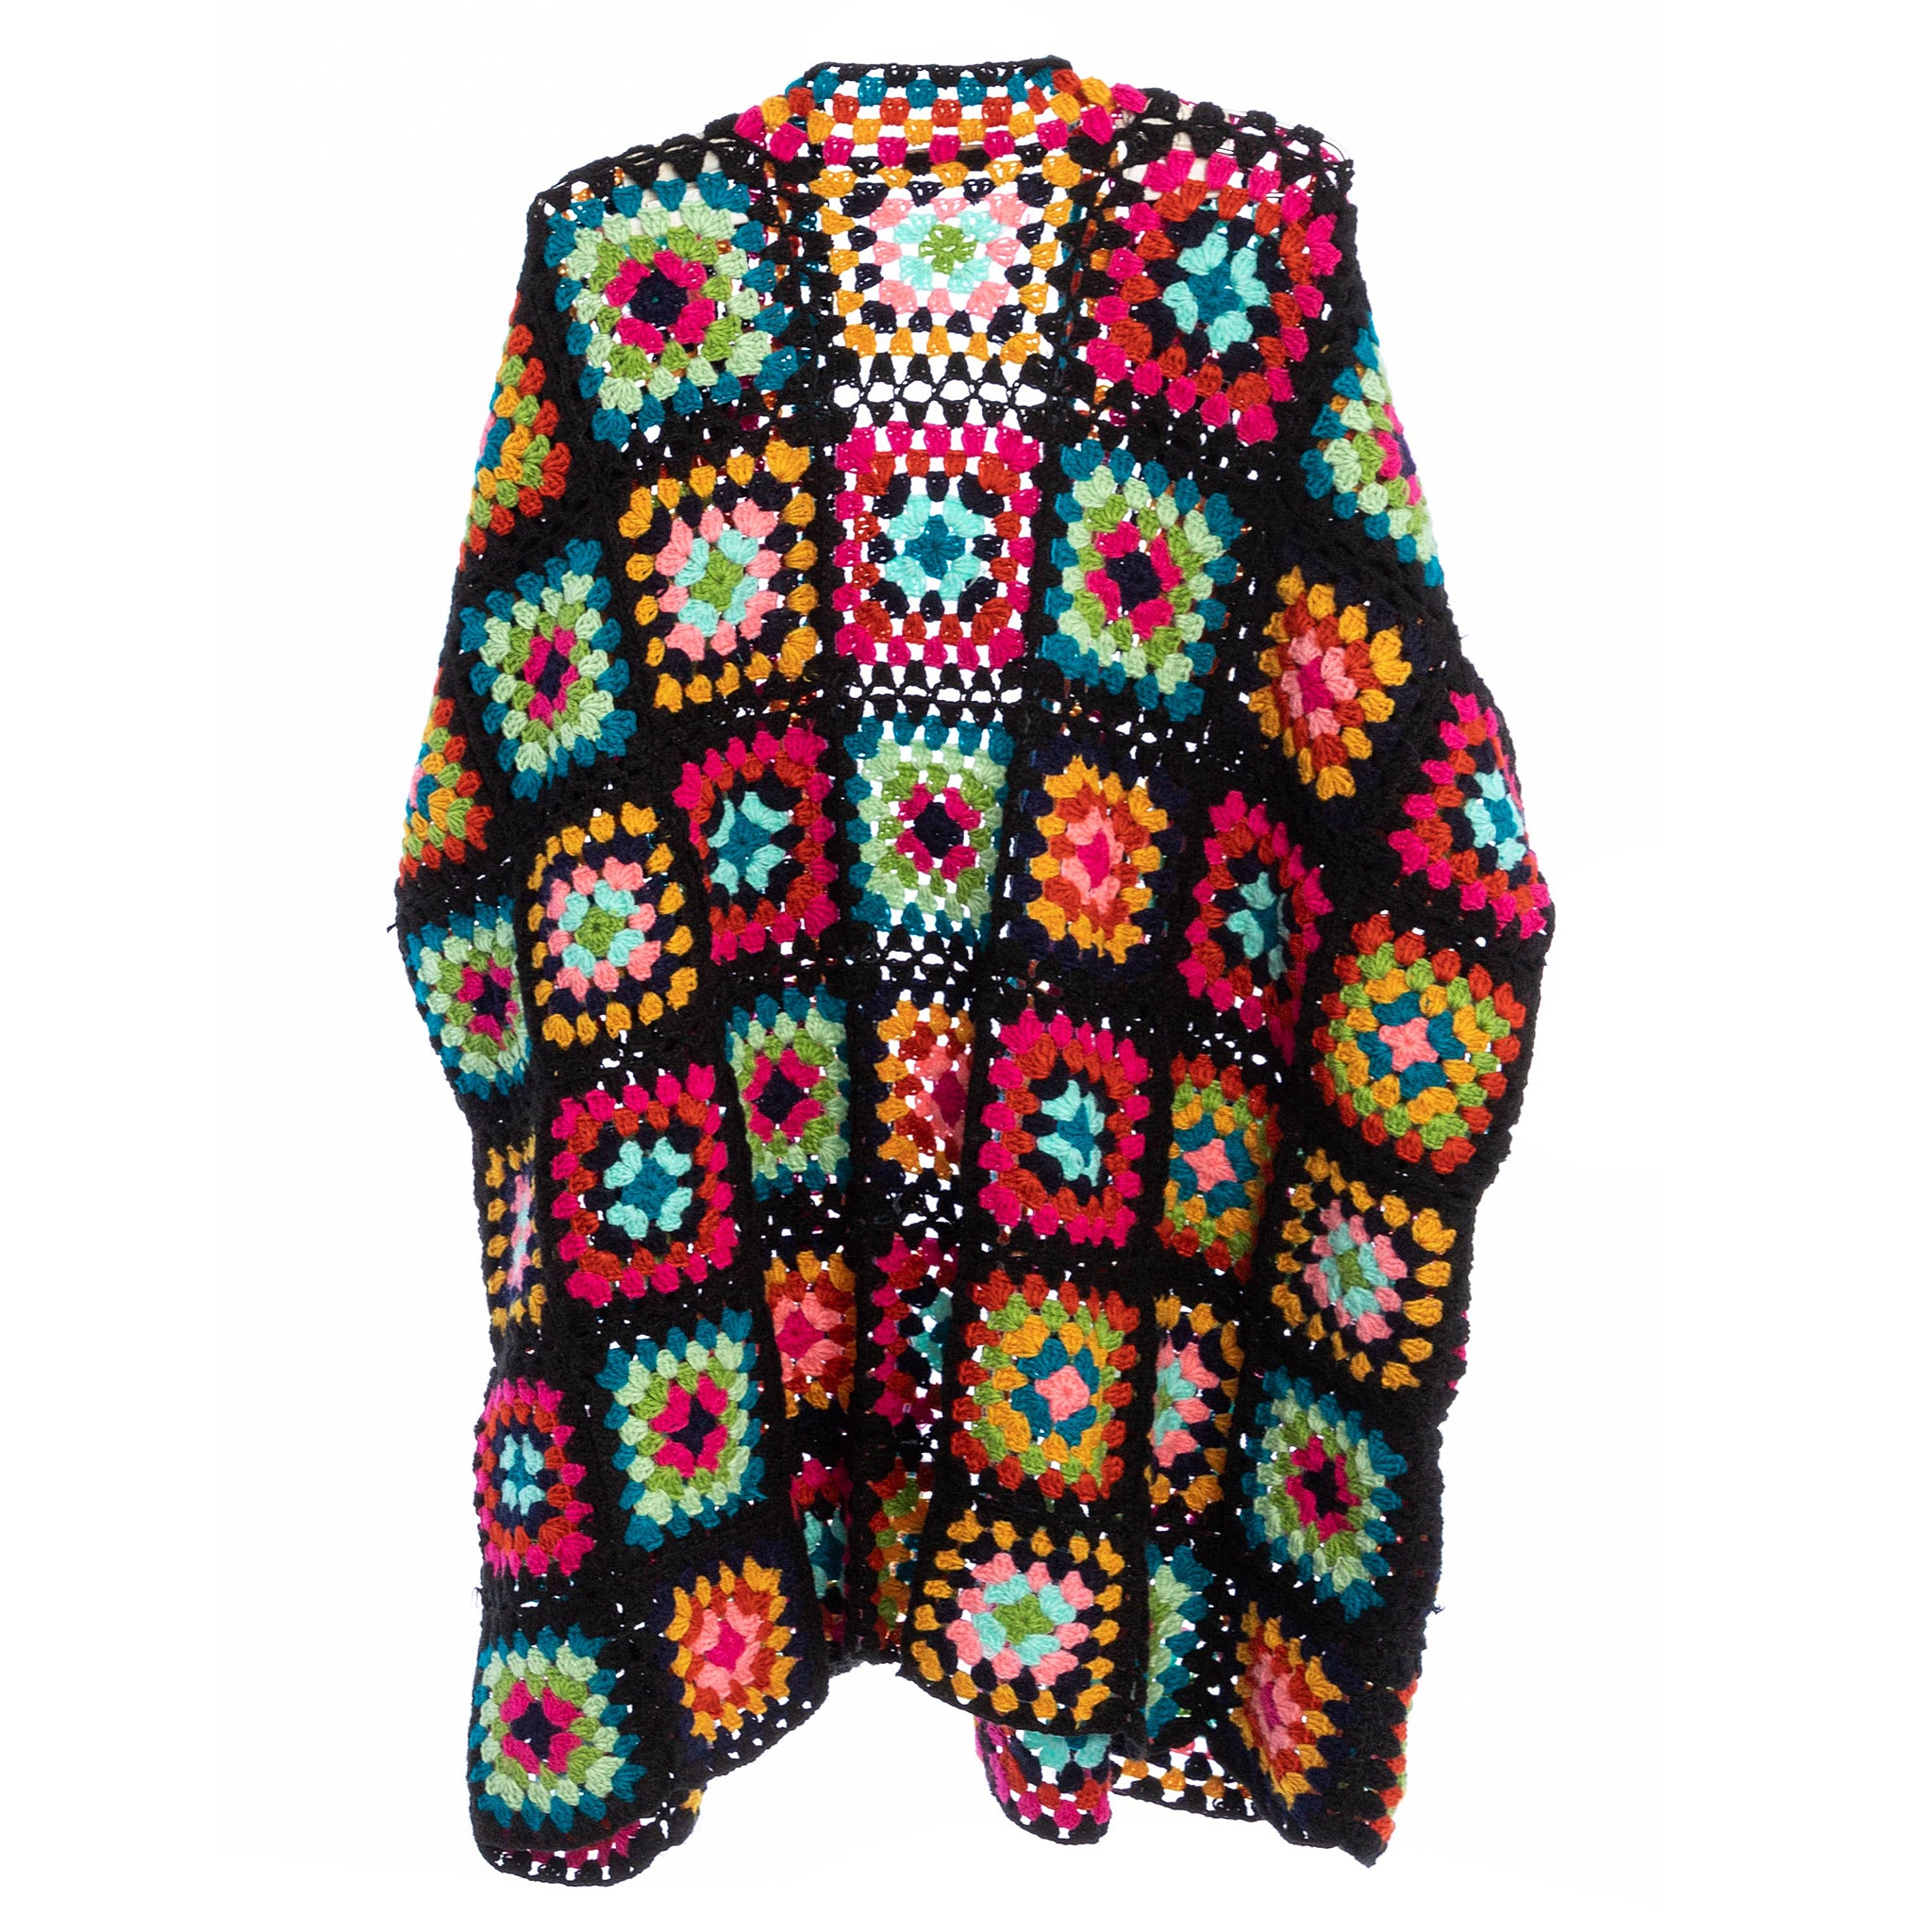 Saachi Noni Granny Square Crocheted Sweater in Black Multicolor